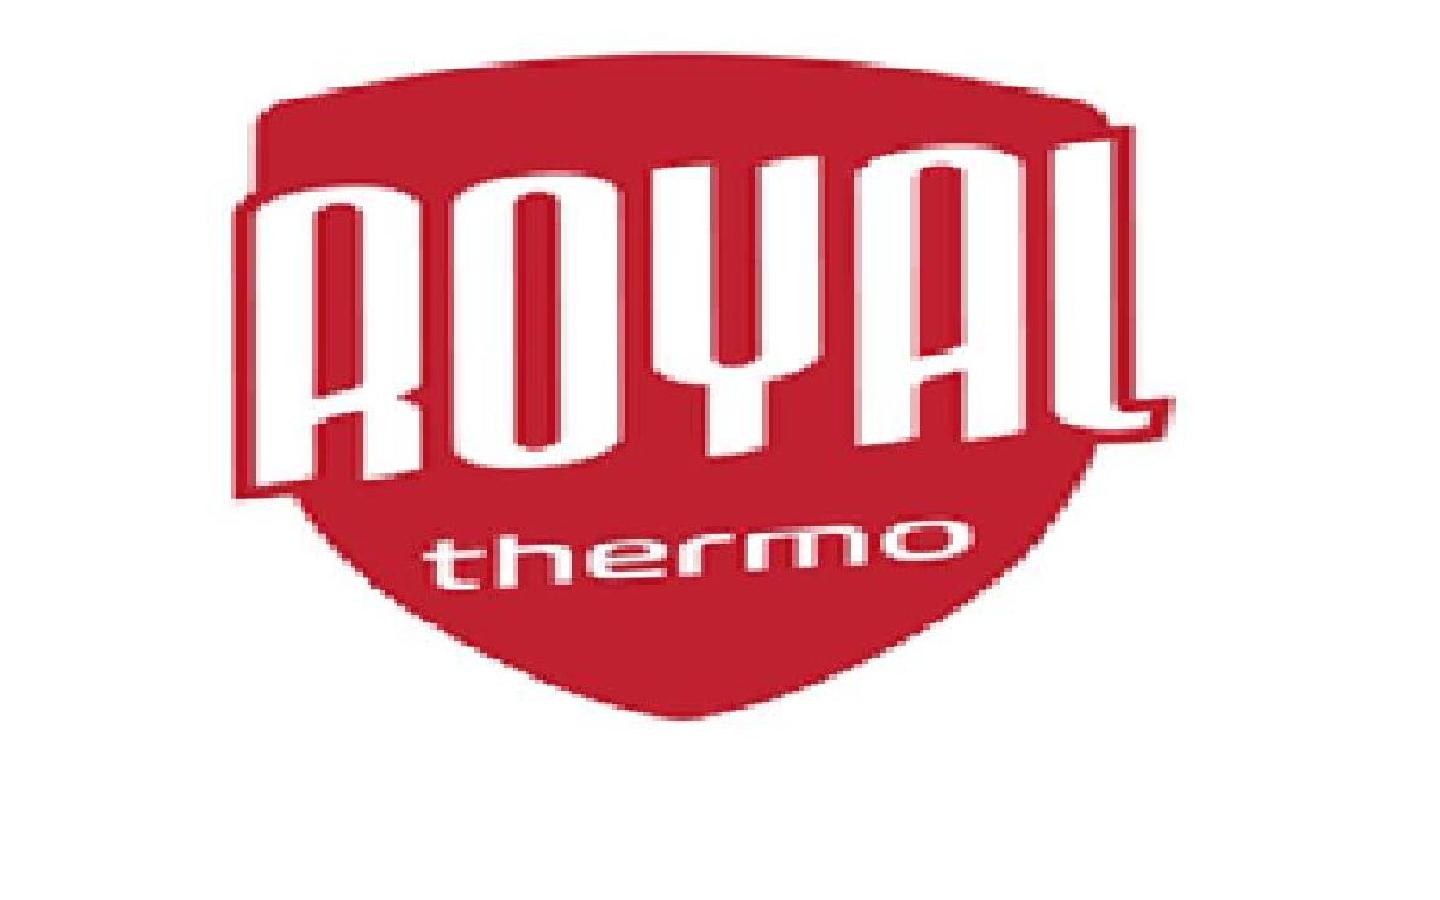 Royal thermo